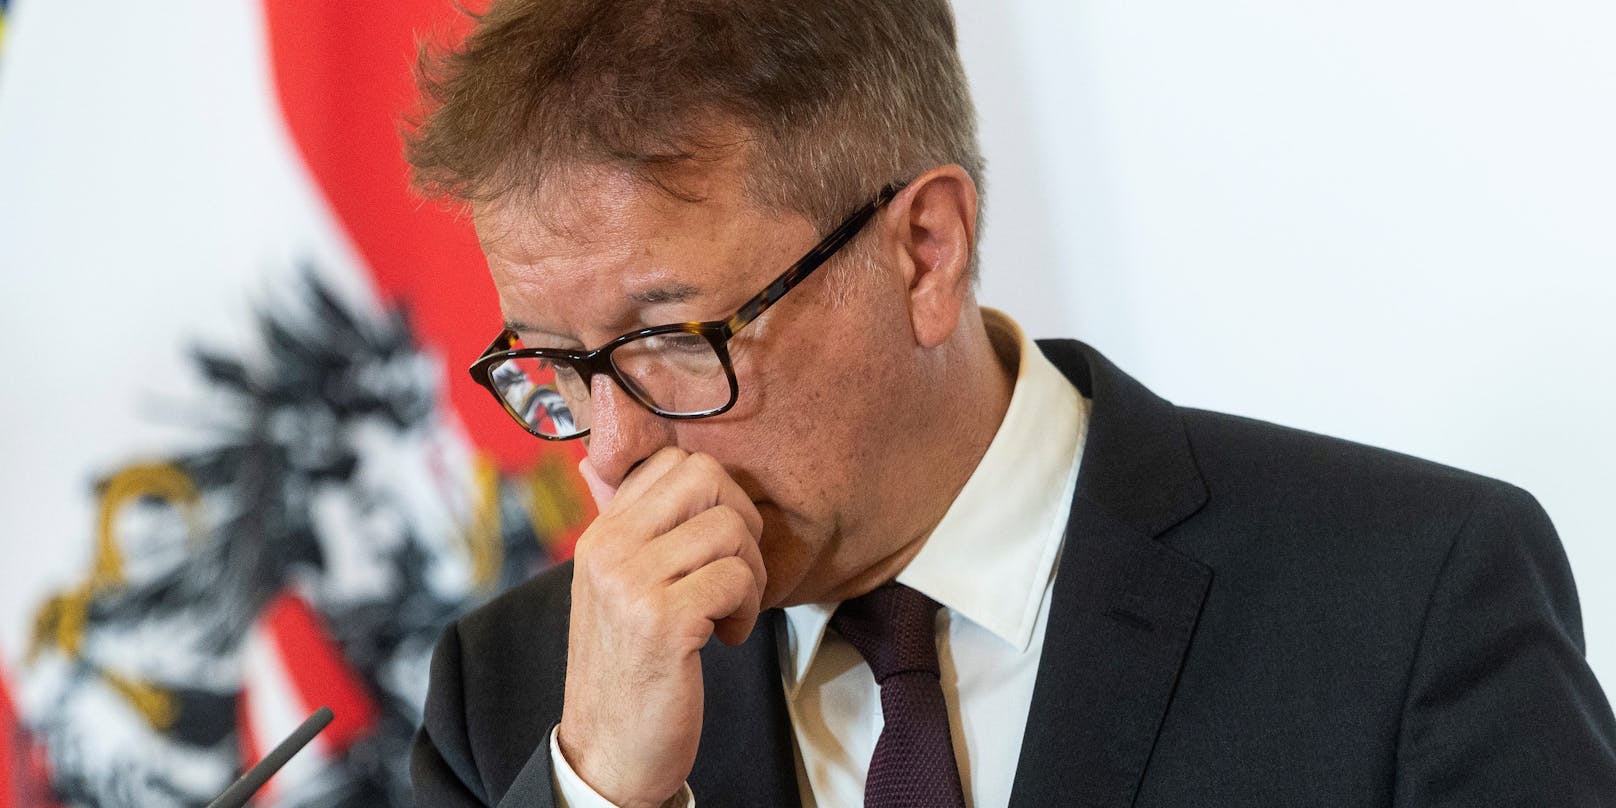 Gesundheitsminister Rudolf Anschober ist "verschnupft" über Behauptungen von FPÖ-Chef Hofer